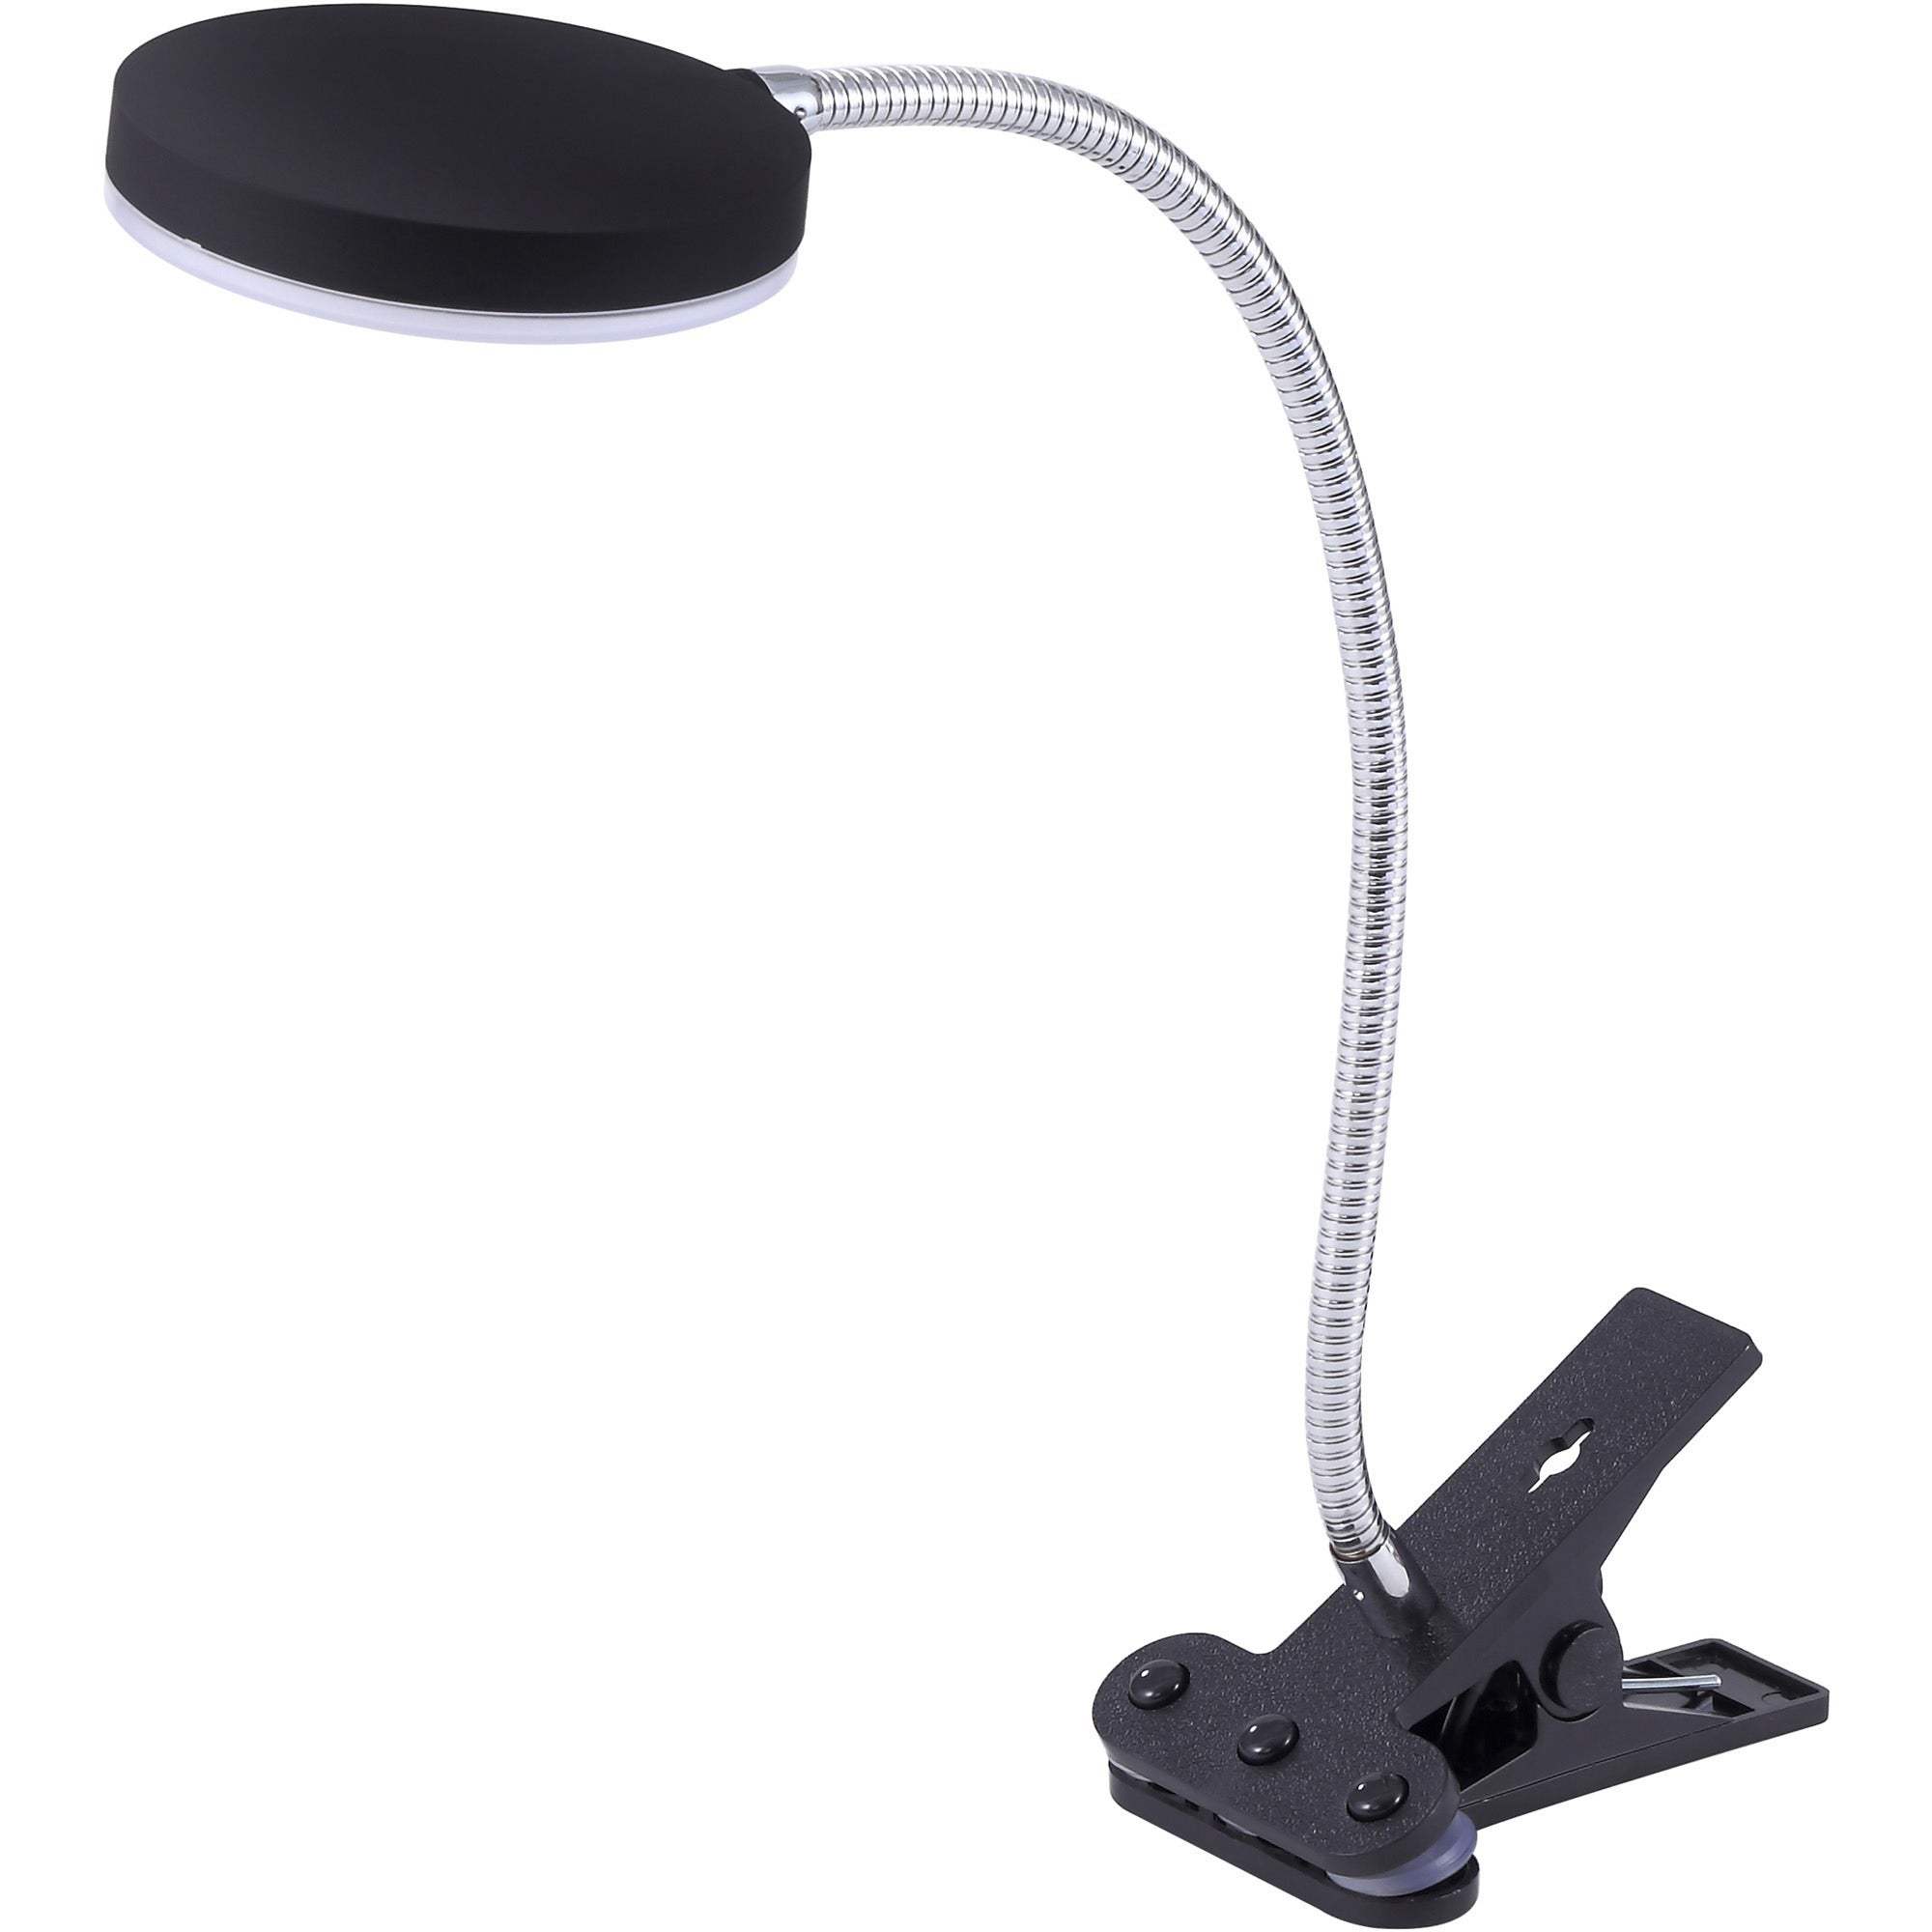 bostitch-adjustable-clamp-desk-lamp-black-138-height-550-w-led-bulb-polished-metal-adjustable-head-flicker-free-flexible-neck-500-lm-lumens-frosted-glass-desk-mountable-black-for-desk_bosvled1800bkc - 1